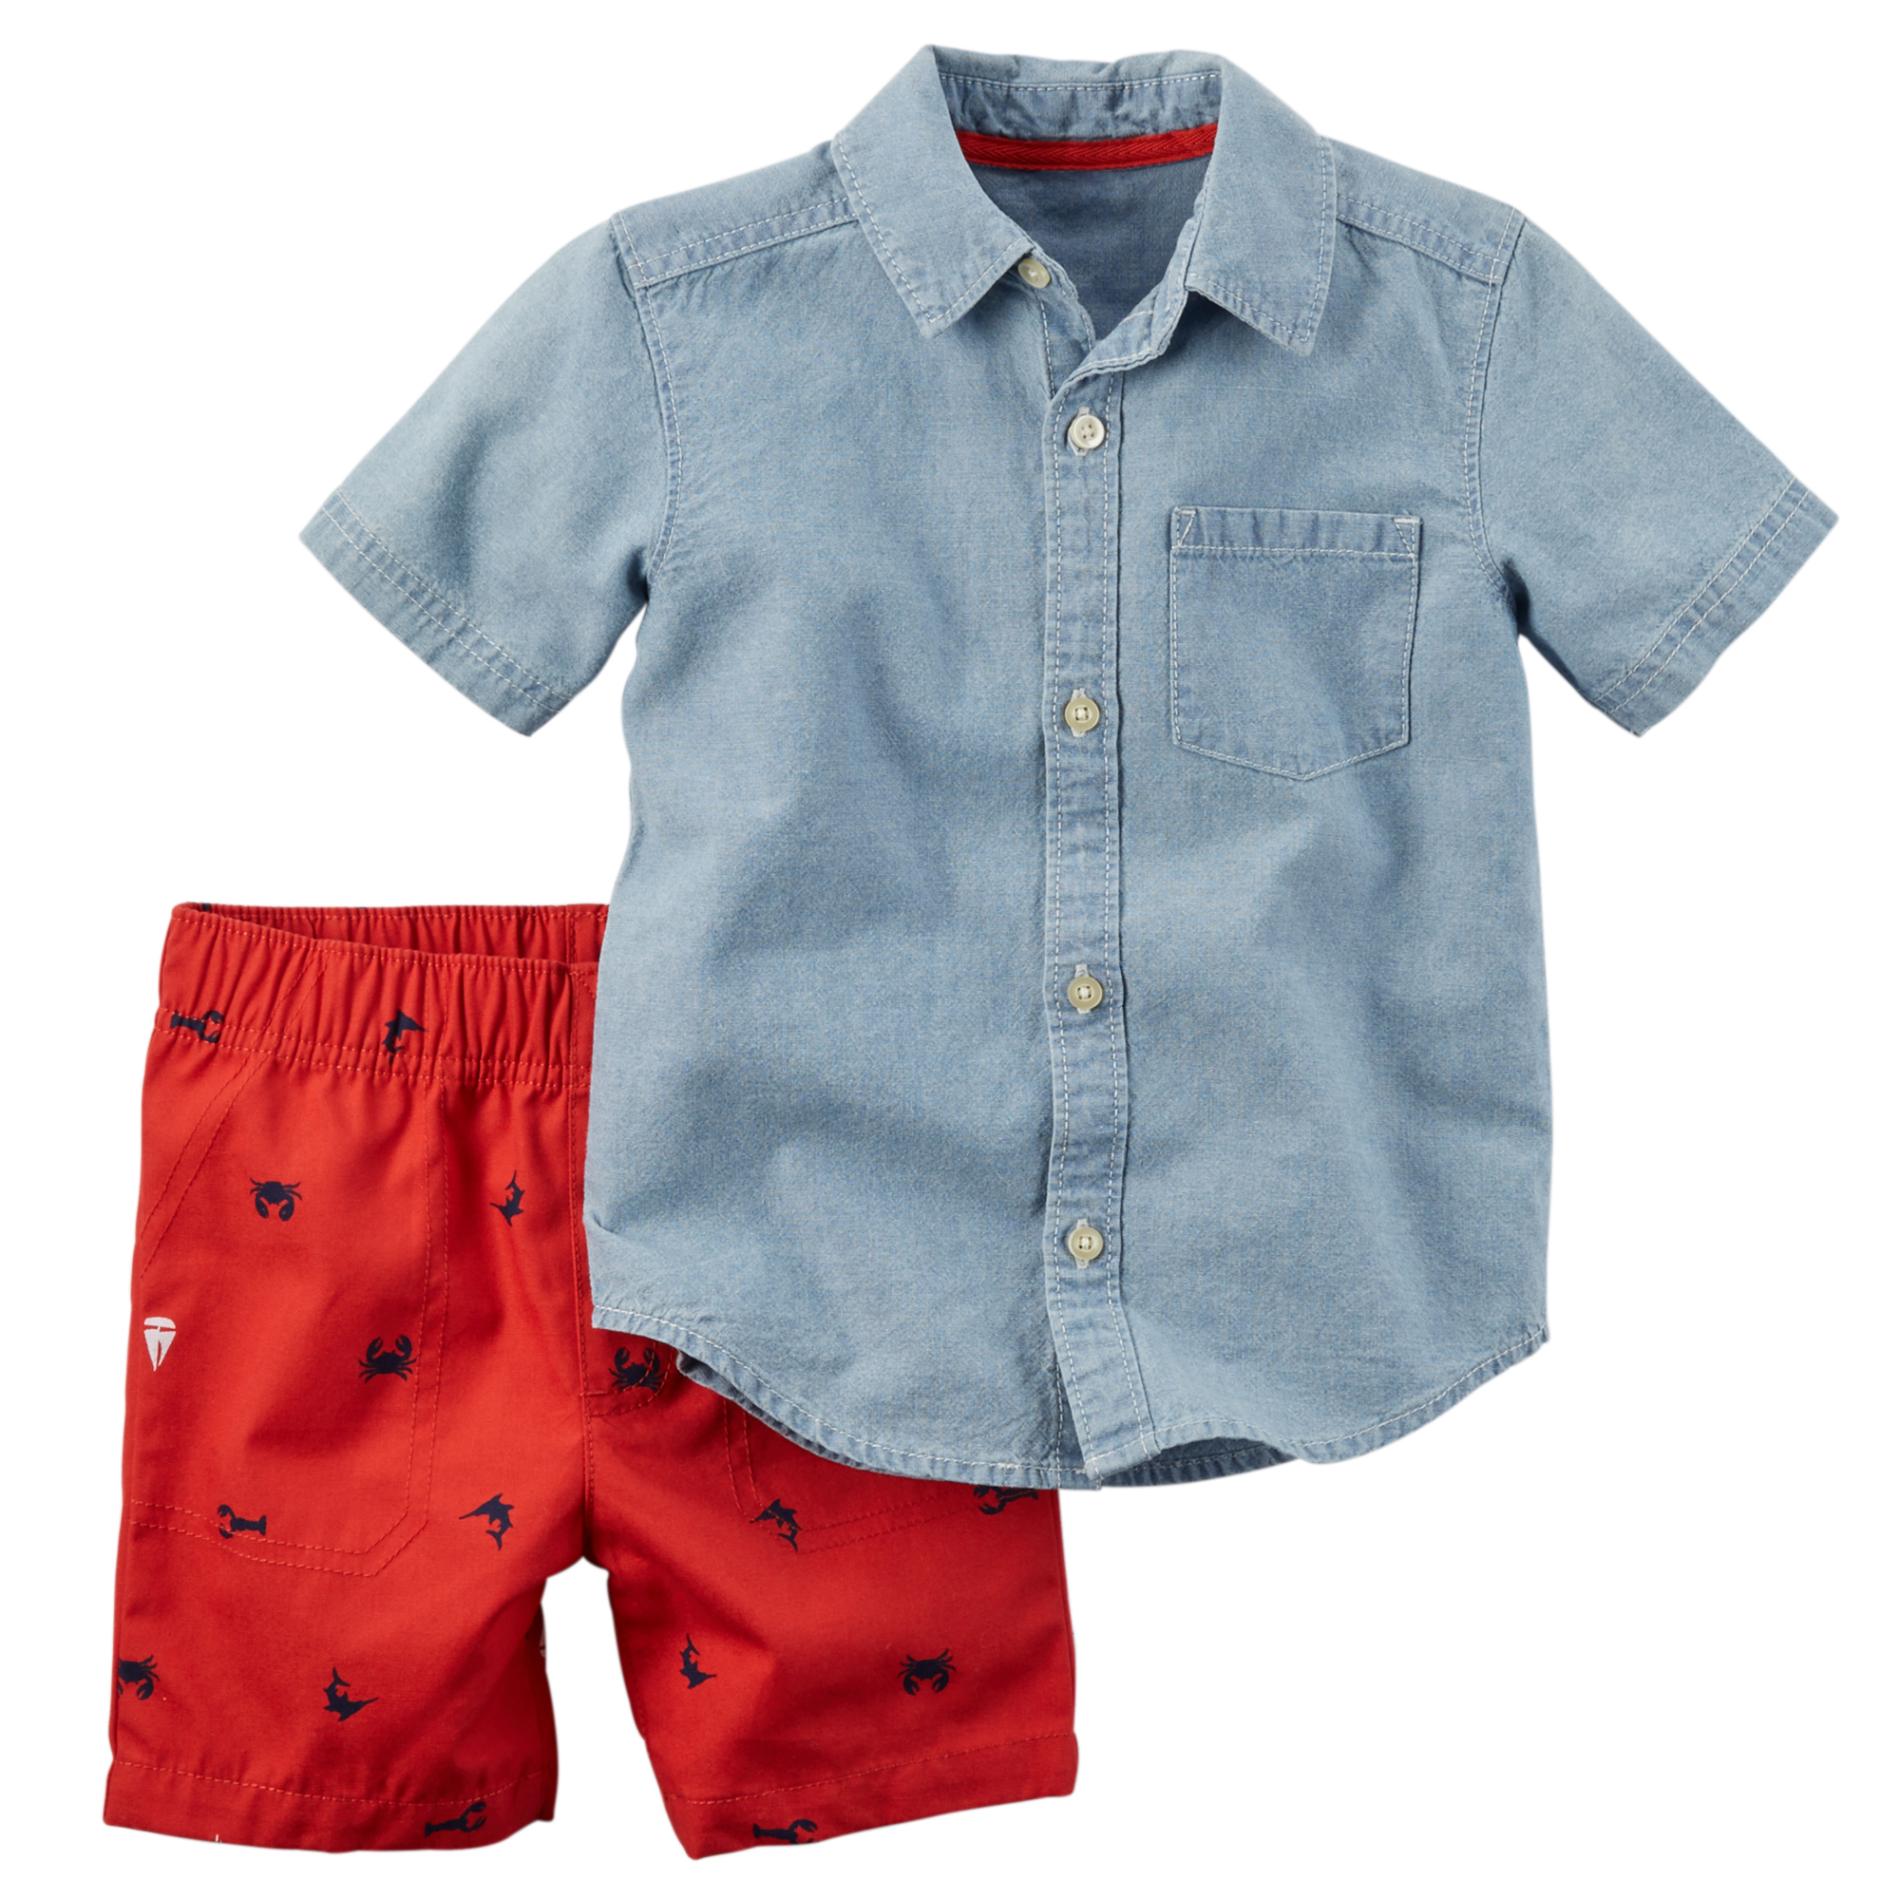 Carter's Newborn, Infant & Toddler Boy's Button-Front Shirt & Shorts